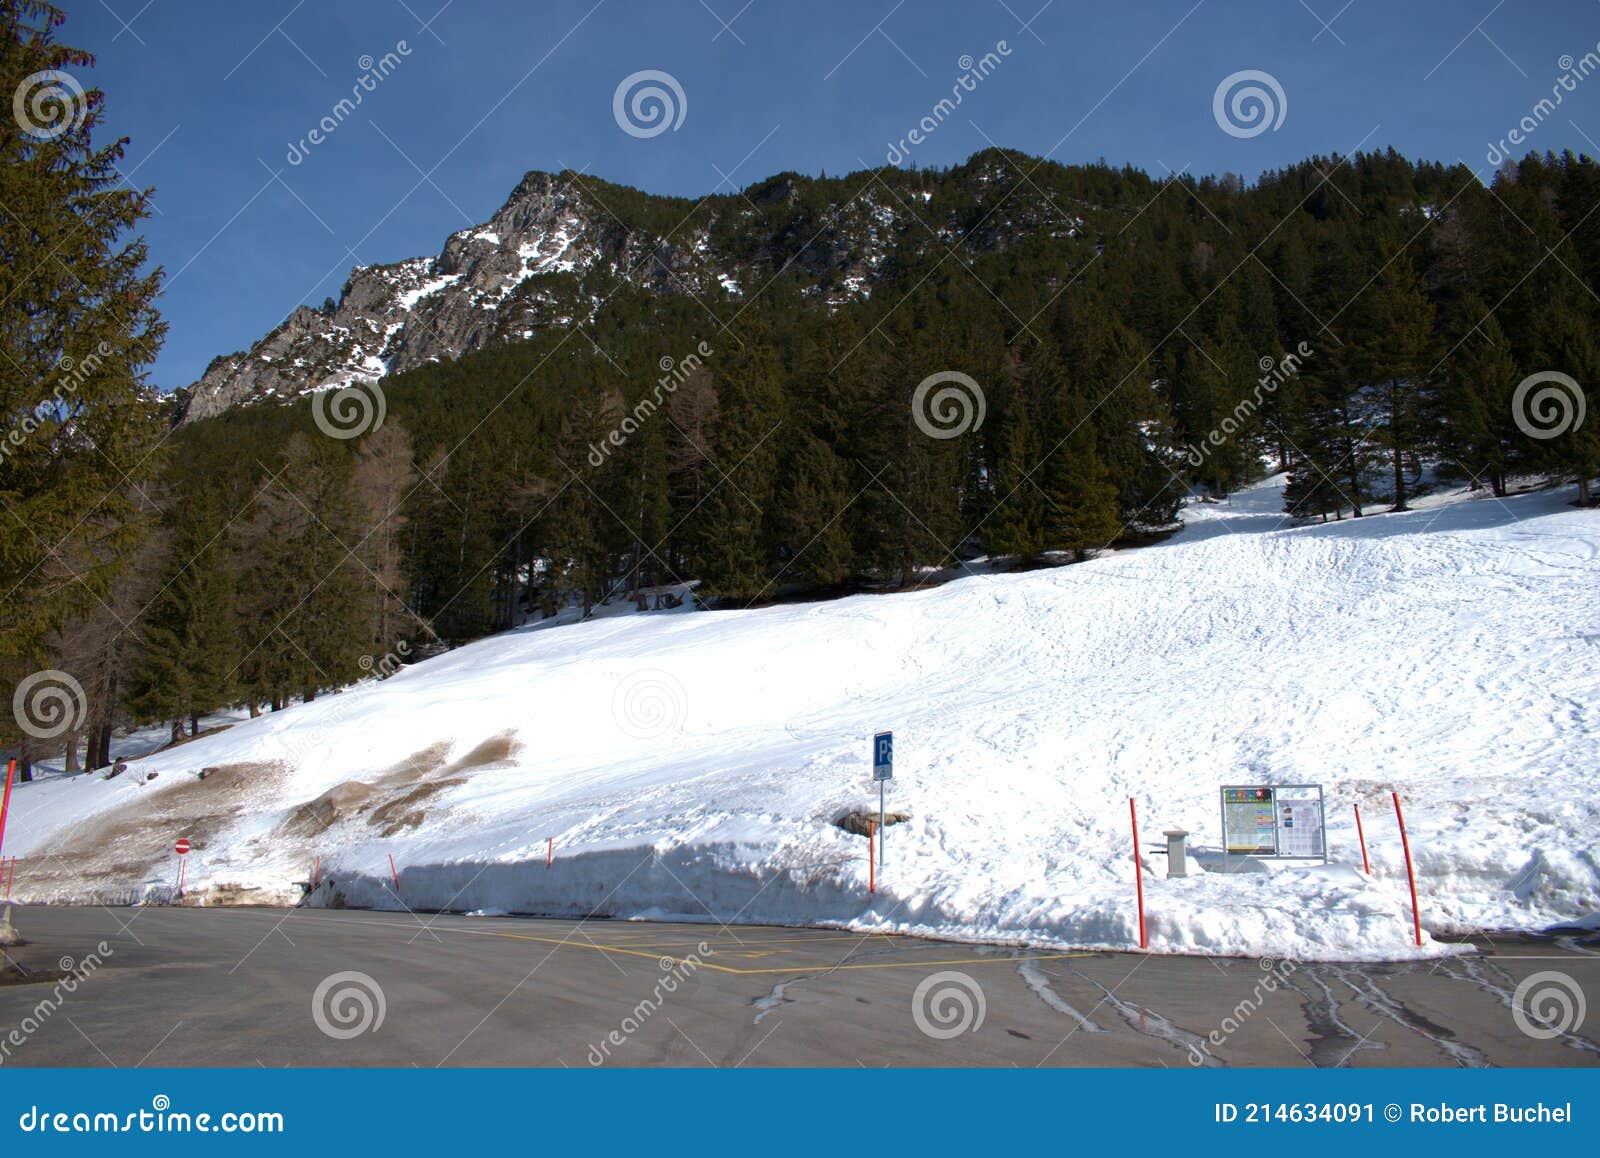 Winter Scenery in the Alps in Liechtenstein 19.2.2021 Stock Image ...